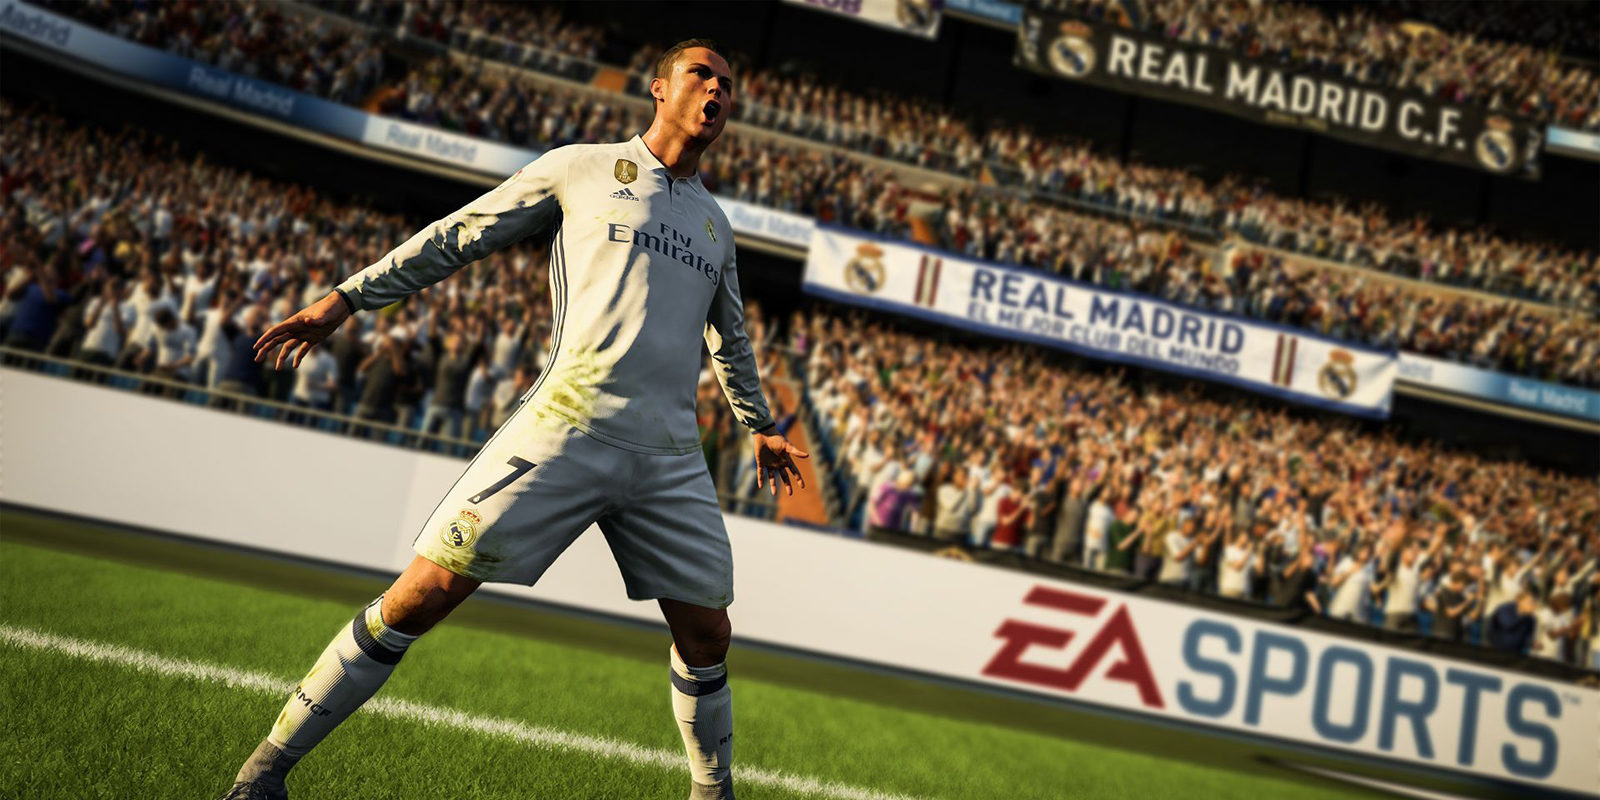 Ya disponible la demo de 'FIFA 18' en PC, PS4 y Xbox One